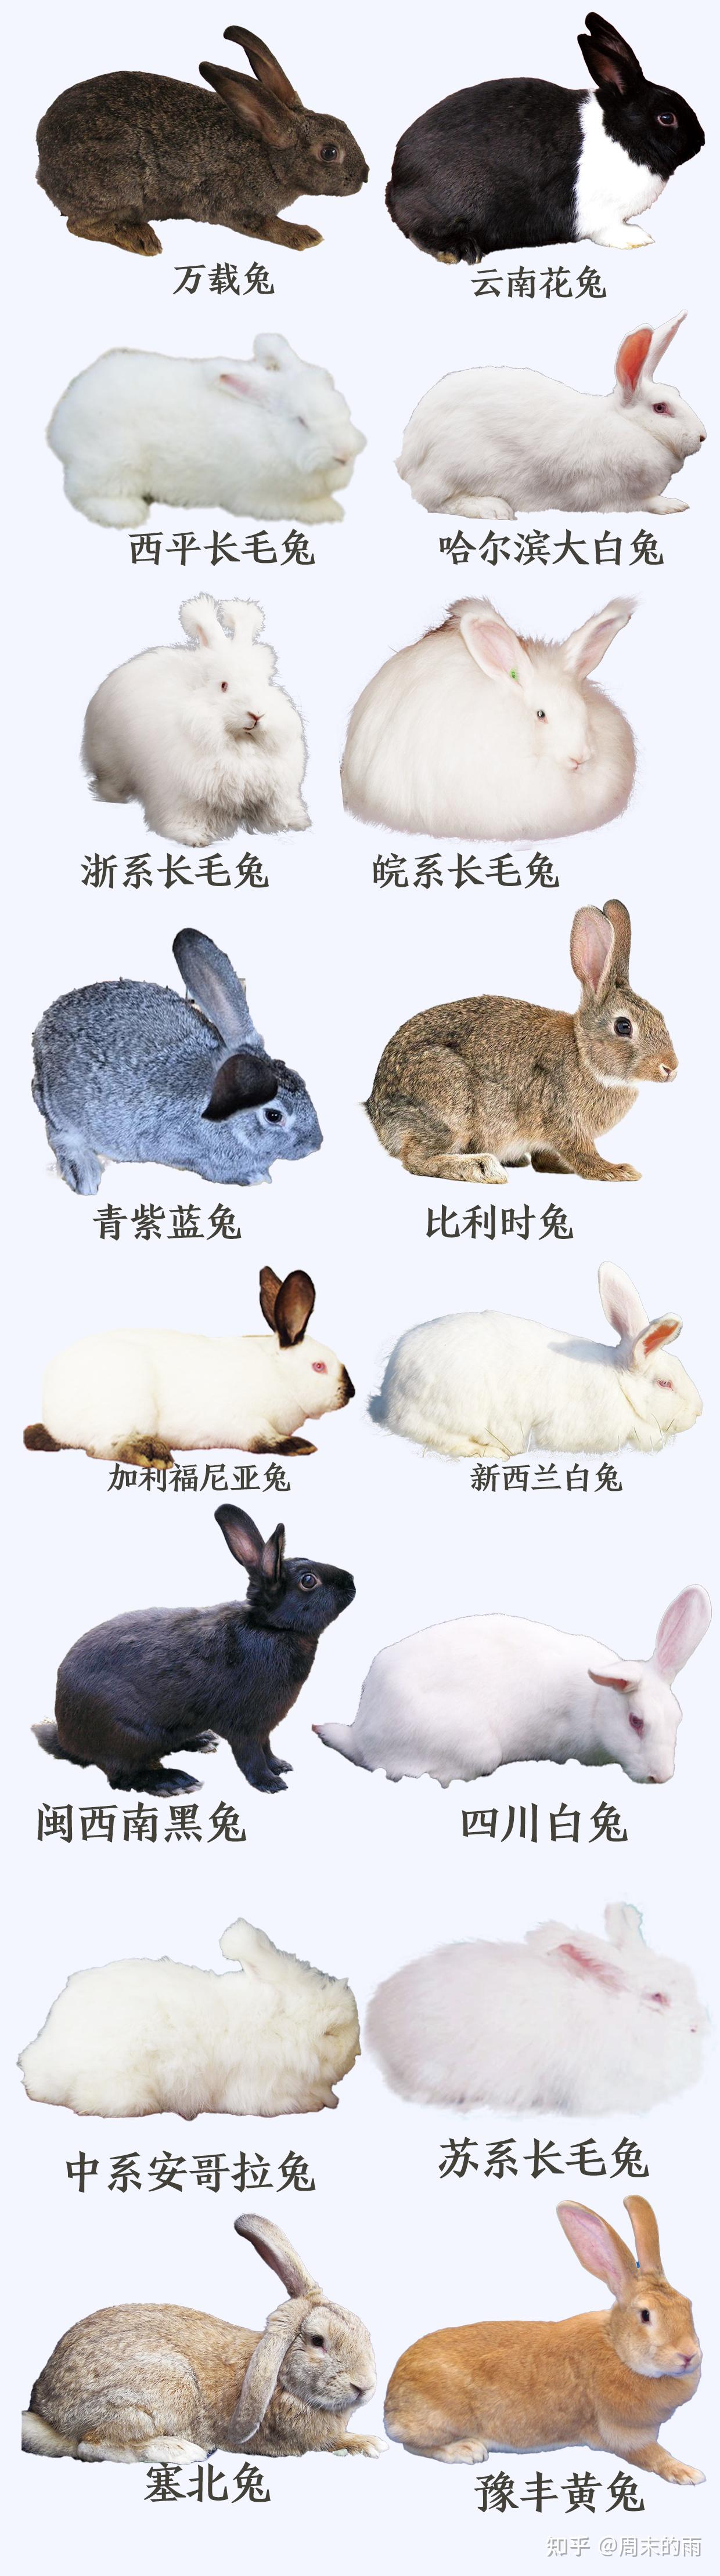 品种介绍 - 中国畜牧业协会兔业分会